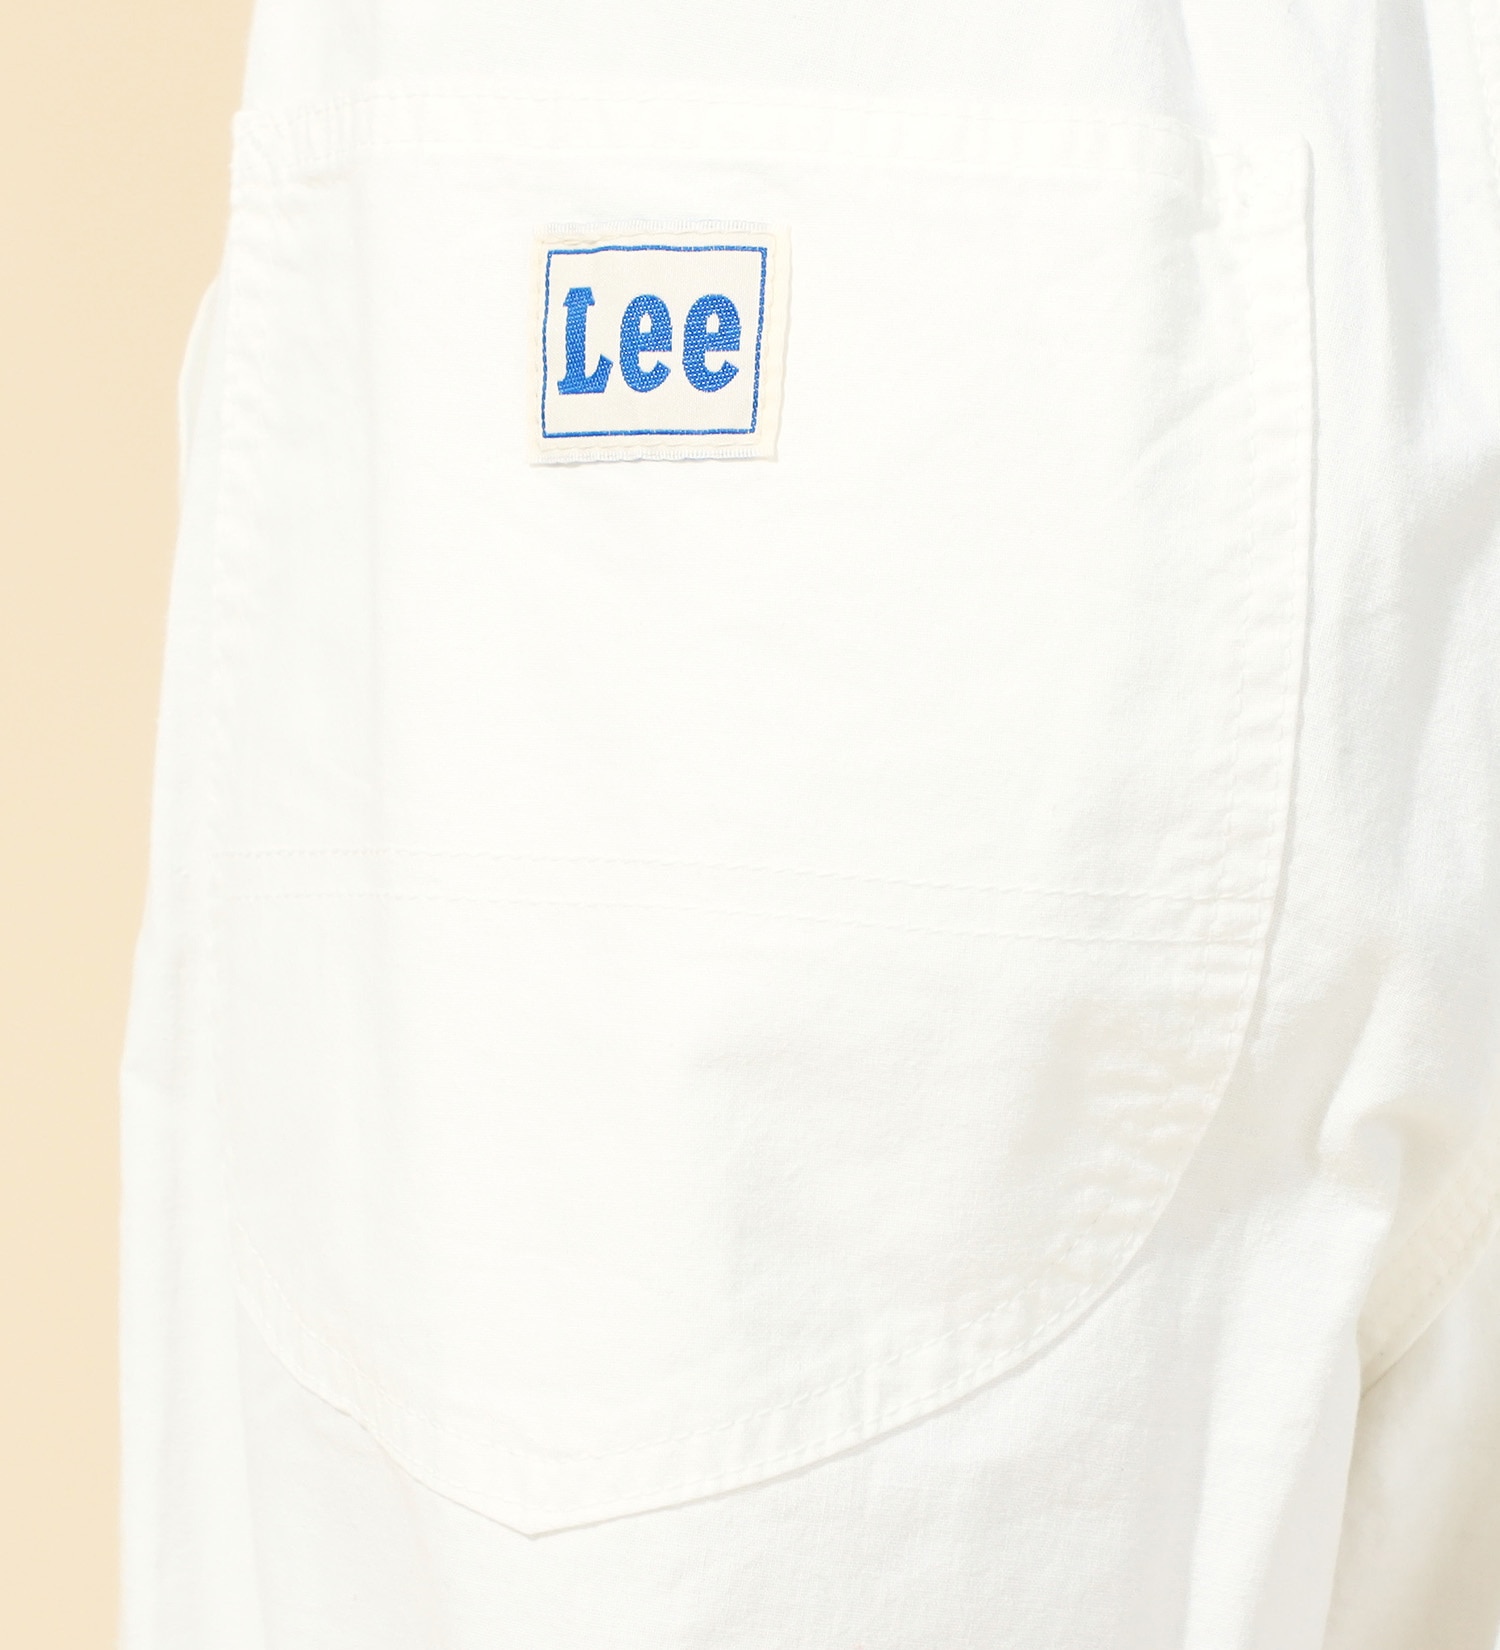 Lee(リー)の【FINAL SALE】【軽くて涼しいワイド】リラックス イージーペインターパンツ/通気性抜群/ムレにくい/夏に快適パンツ|パンツ/パンツ/レディース|ホワイト